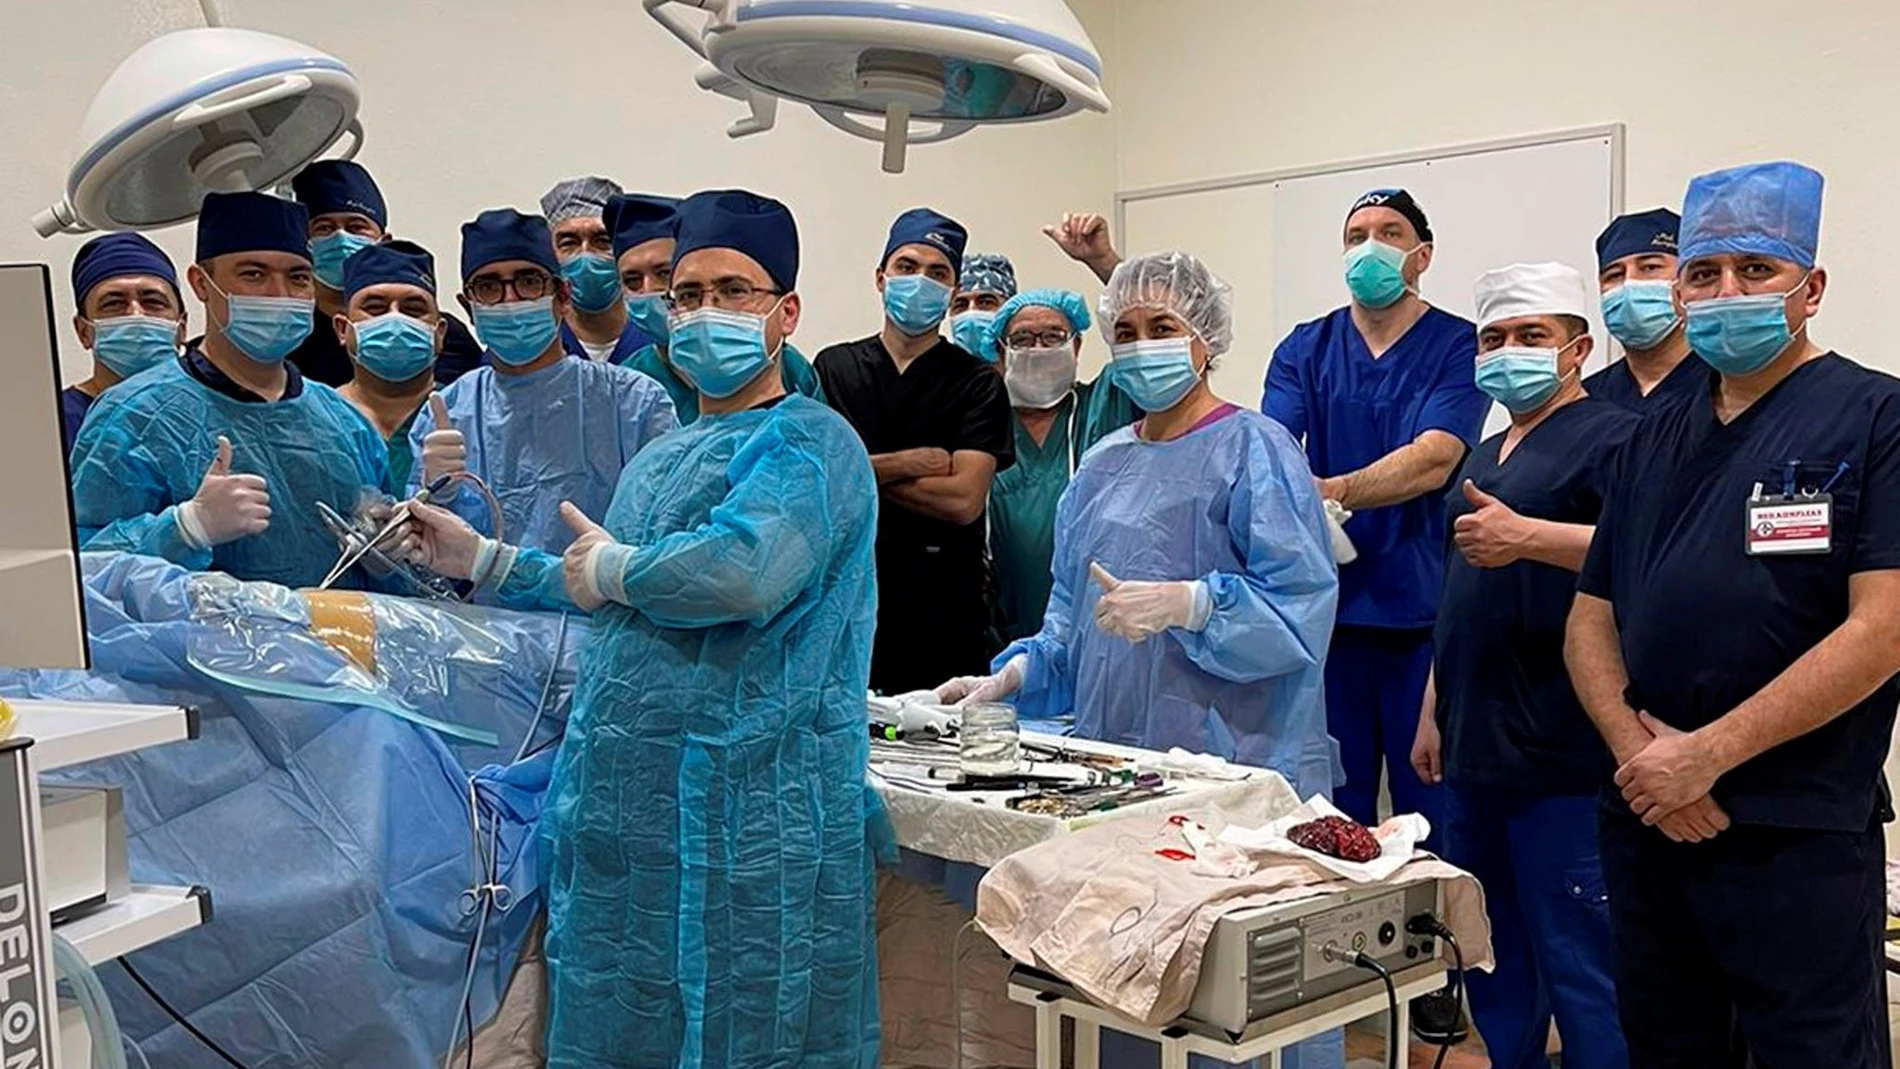 El cirujano gallego Diego González Rivas durante una operación con una técnica de la que él es pionero y enseña por todo el mundo, en Uzbekistán.